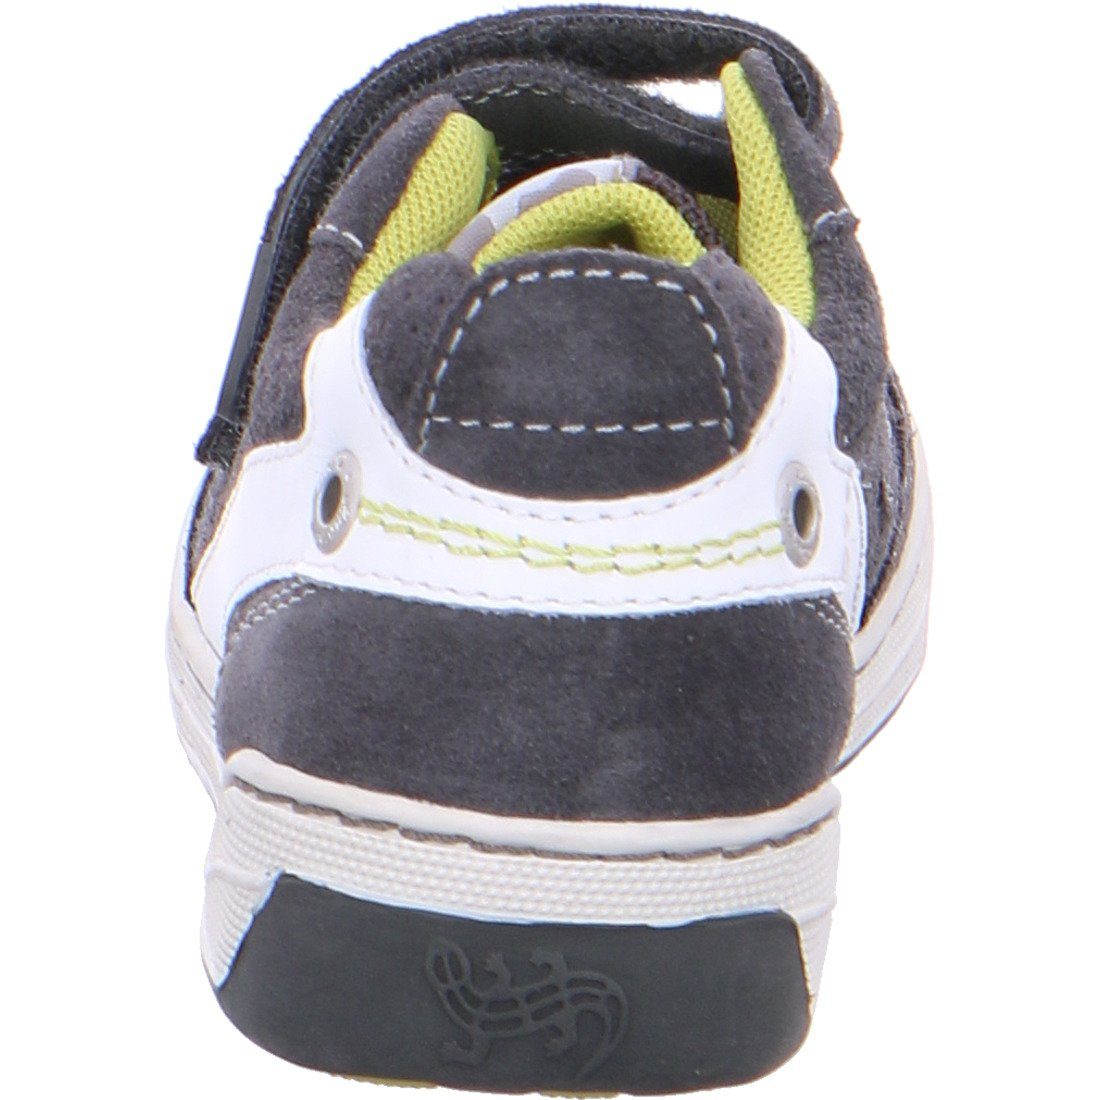 Rauleder grau 036954 Schuhe, Sneaker - Bruce Lurchi Jungen Lurchi Sneaker